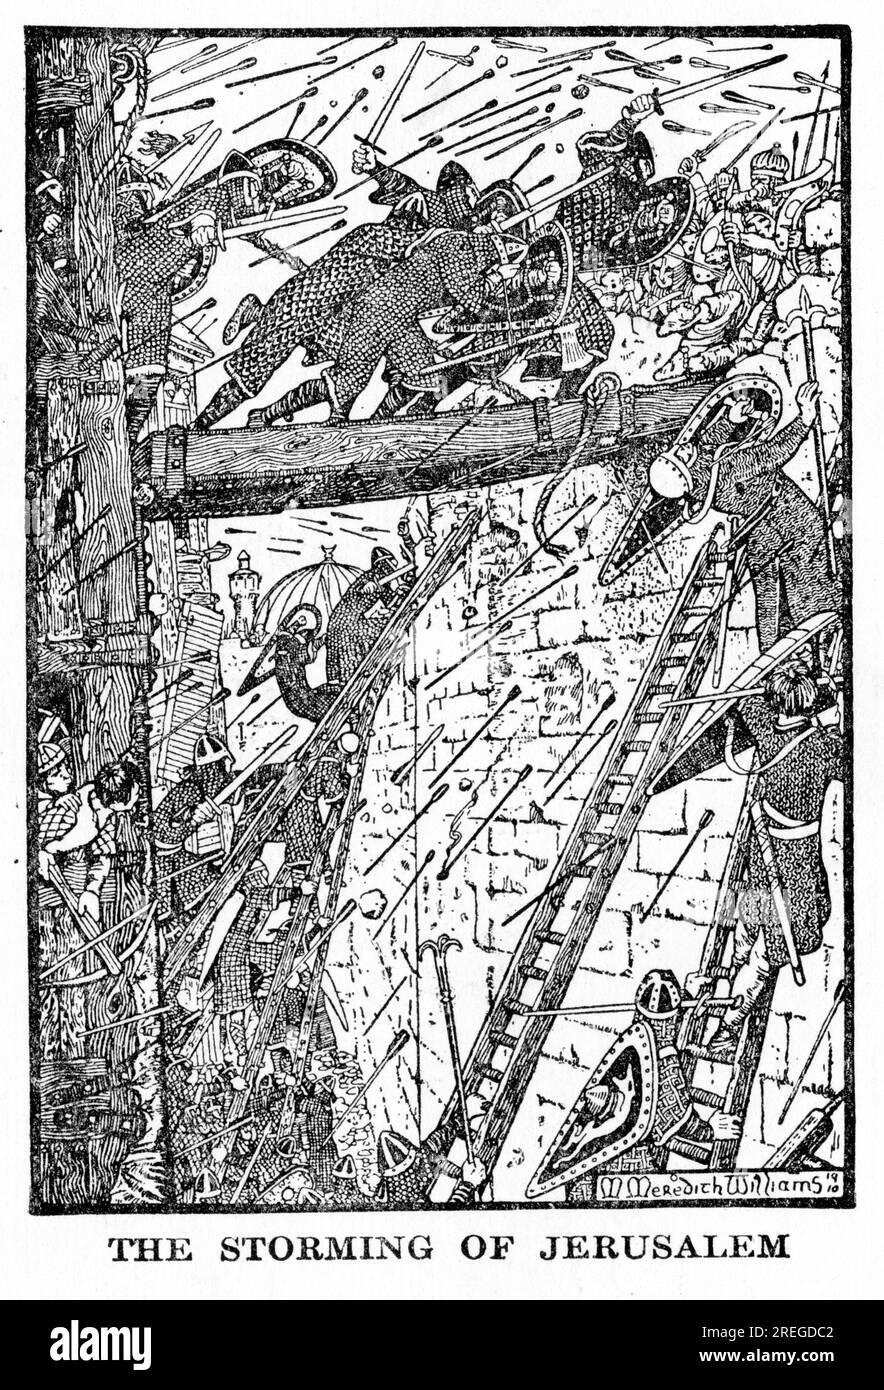 L'assalto di Gerusalemme durante le crociate, pubblicato intorno al 1910 Foto Stock